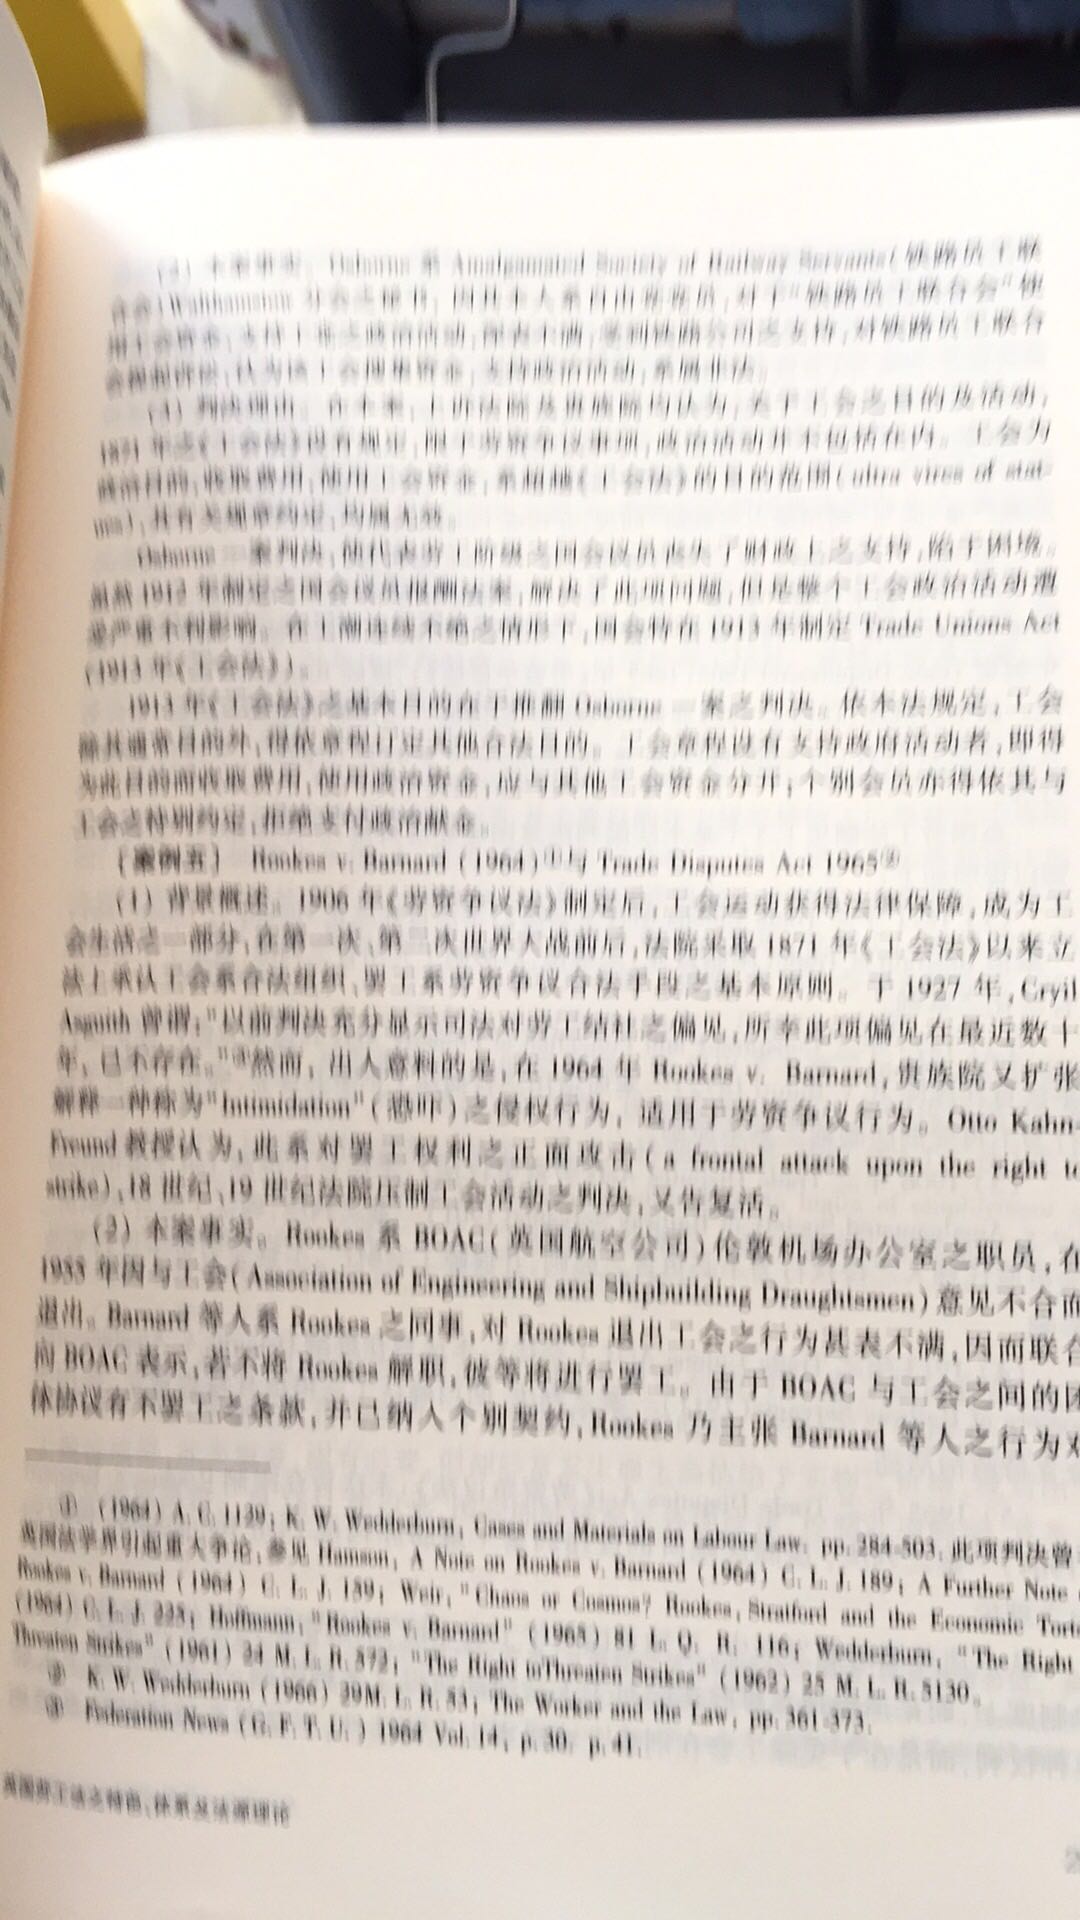 王泽鉴著的《民法学说与判例研究（重排合订本）》分析检讨台湾民法解释适用的重要问题，记录着台湾“民法”如何经由判例与学说因应社会变迁与体制改革，在某种意义上可认为是一部台湾“民法”发展史。上世纪70年代的台湾法学基本上仍属教科书时代，尚无法院裁判公布制度，案例研究犹未发达，撰写本书之目的在于引进新的法律概念，建立理论体系，检视法律适用的逻辑及价值判断，在个案里寻找法律原则，从事案例比较研究，发现活的法律。在方法上综合运用法释义学（法教义学）、比较法、案例研究及请求权基础，在一定程度参与台湾“民法”的变迁、教学研究及法律思维的反省与开展。